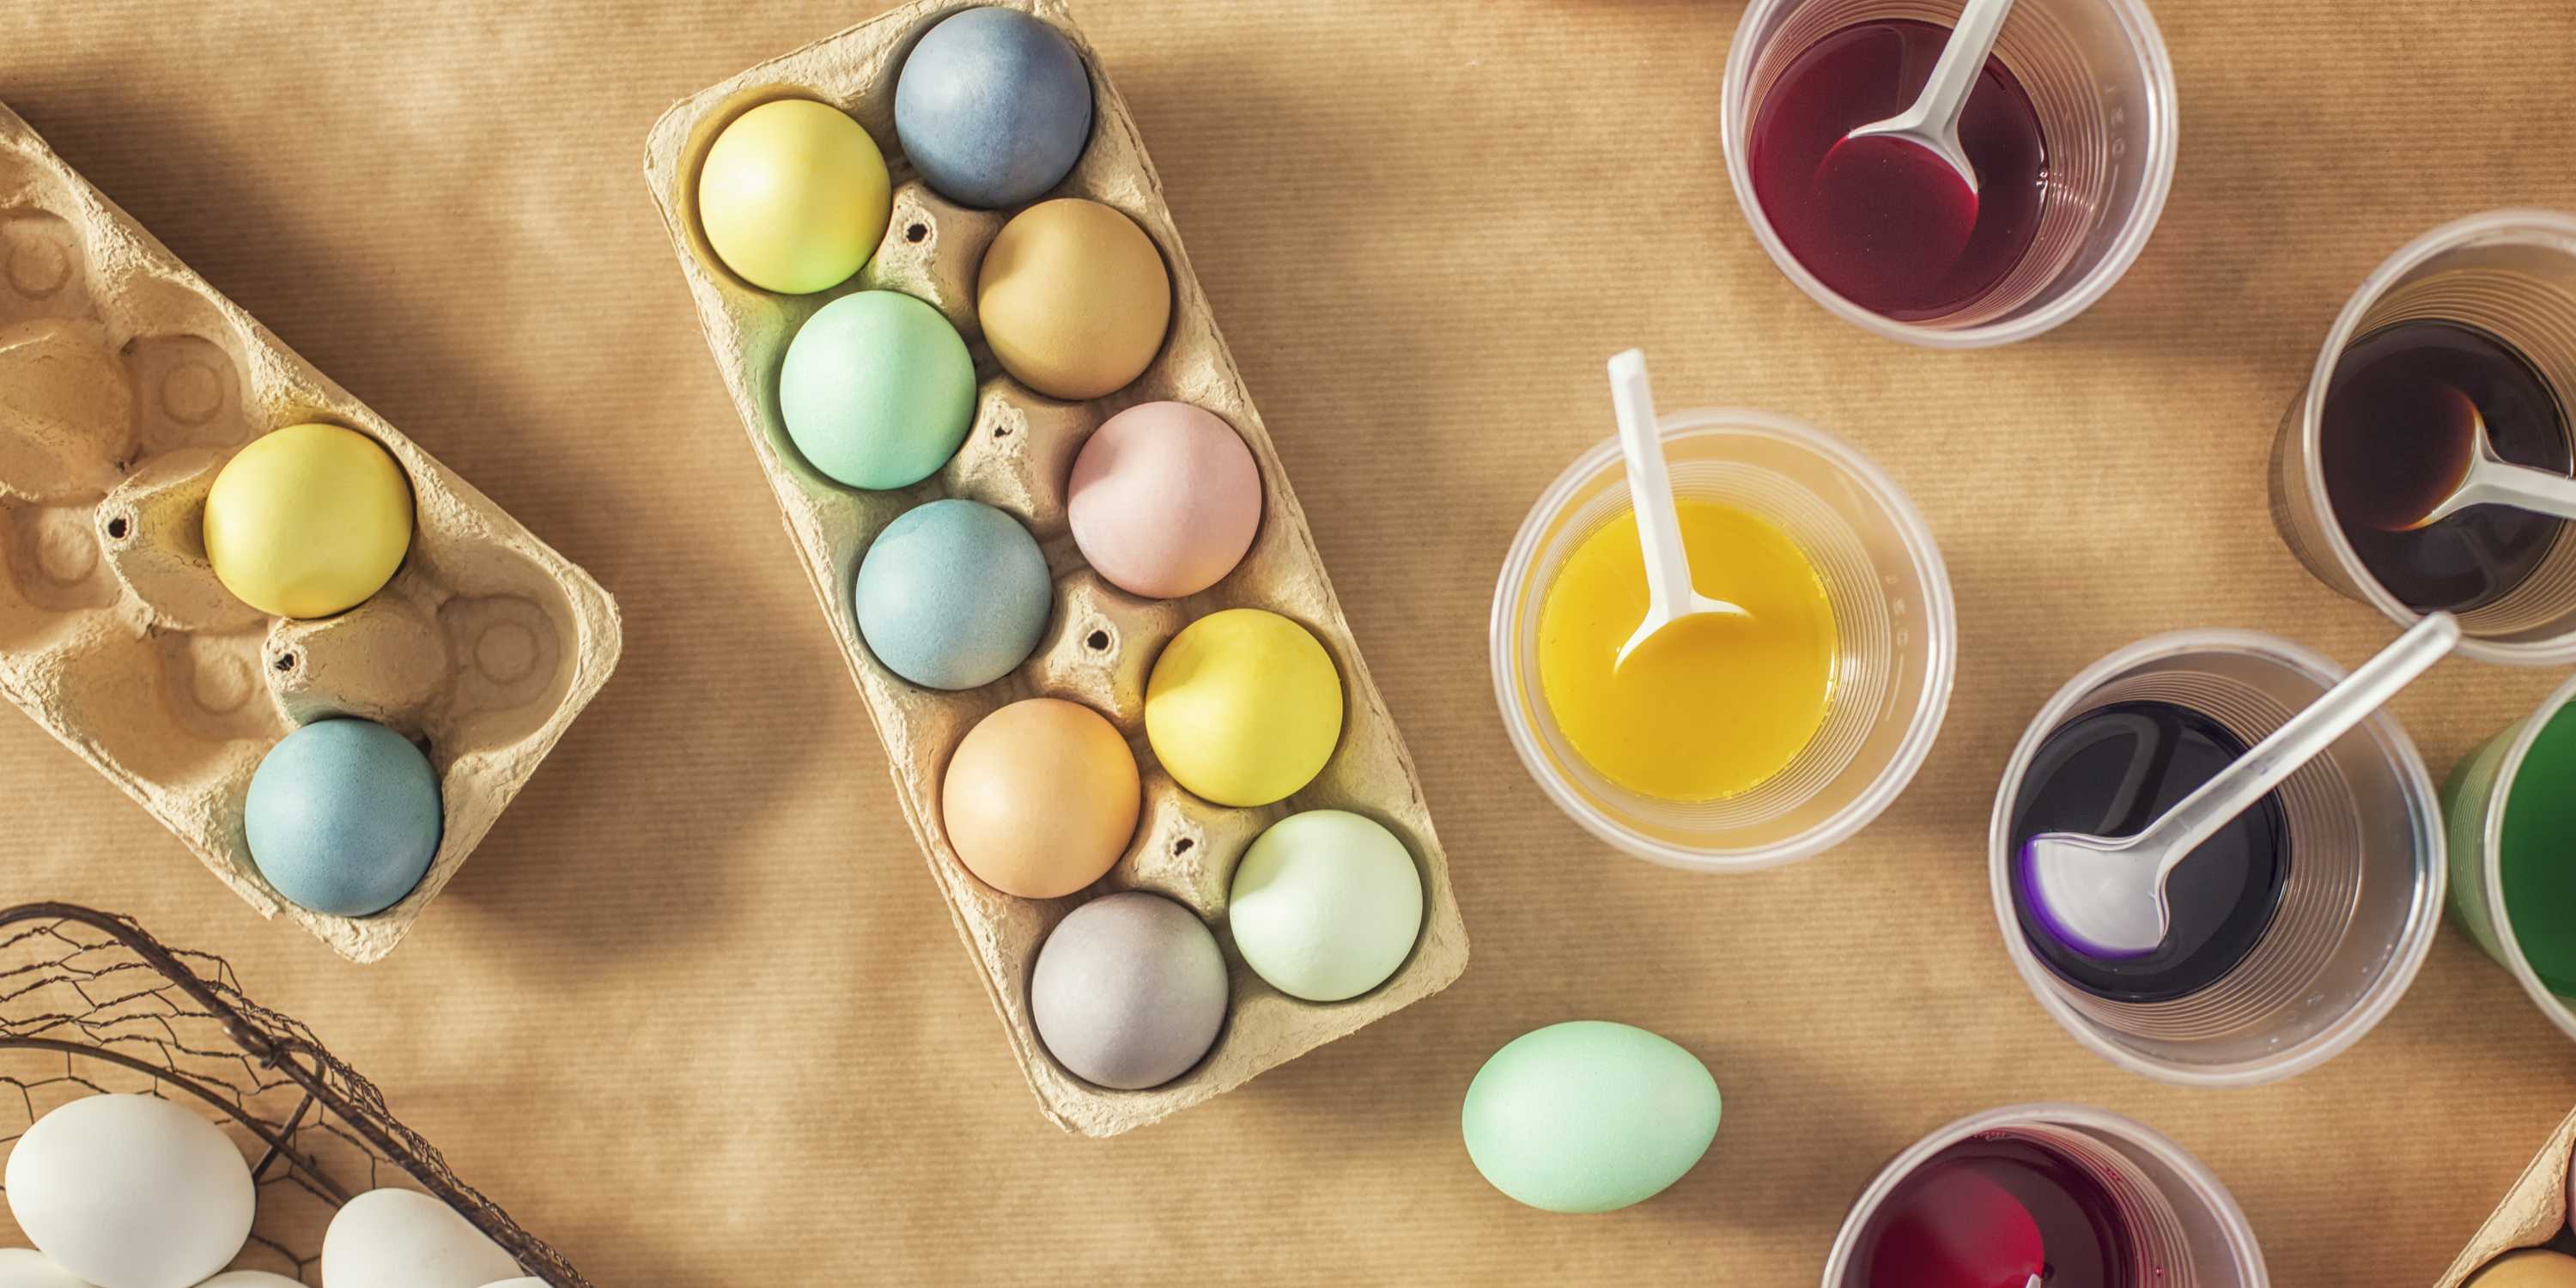 Окрашивание яиц натуральными красителями. Краска для яиц. Натуральные краски для яиц. Краски для окрашивания яиц. Окрашивание яиц пищевыми красителями.